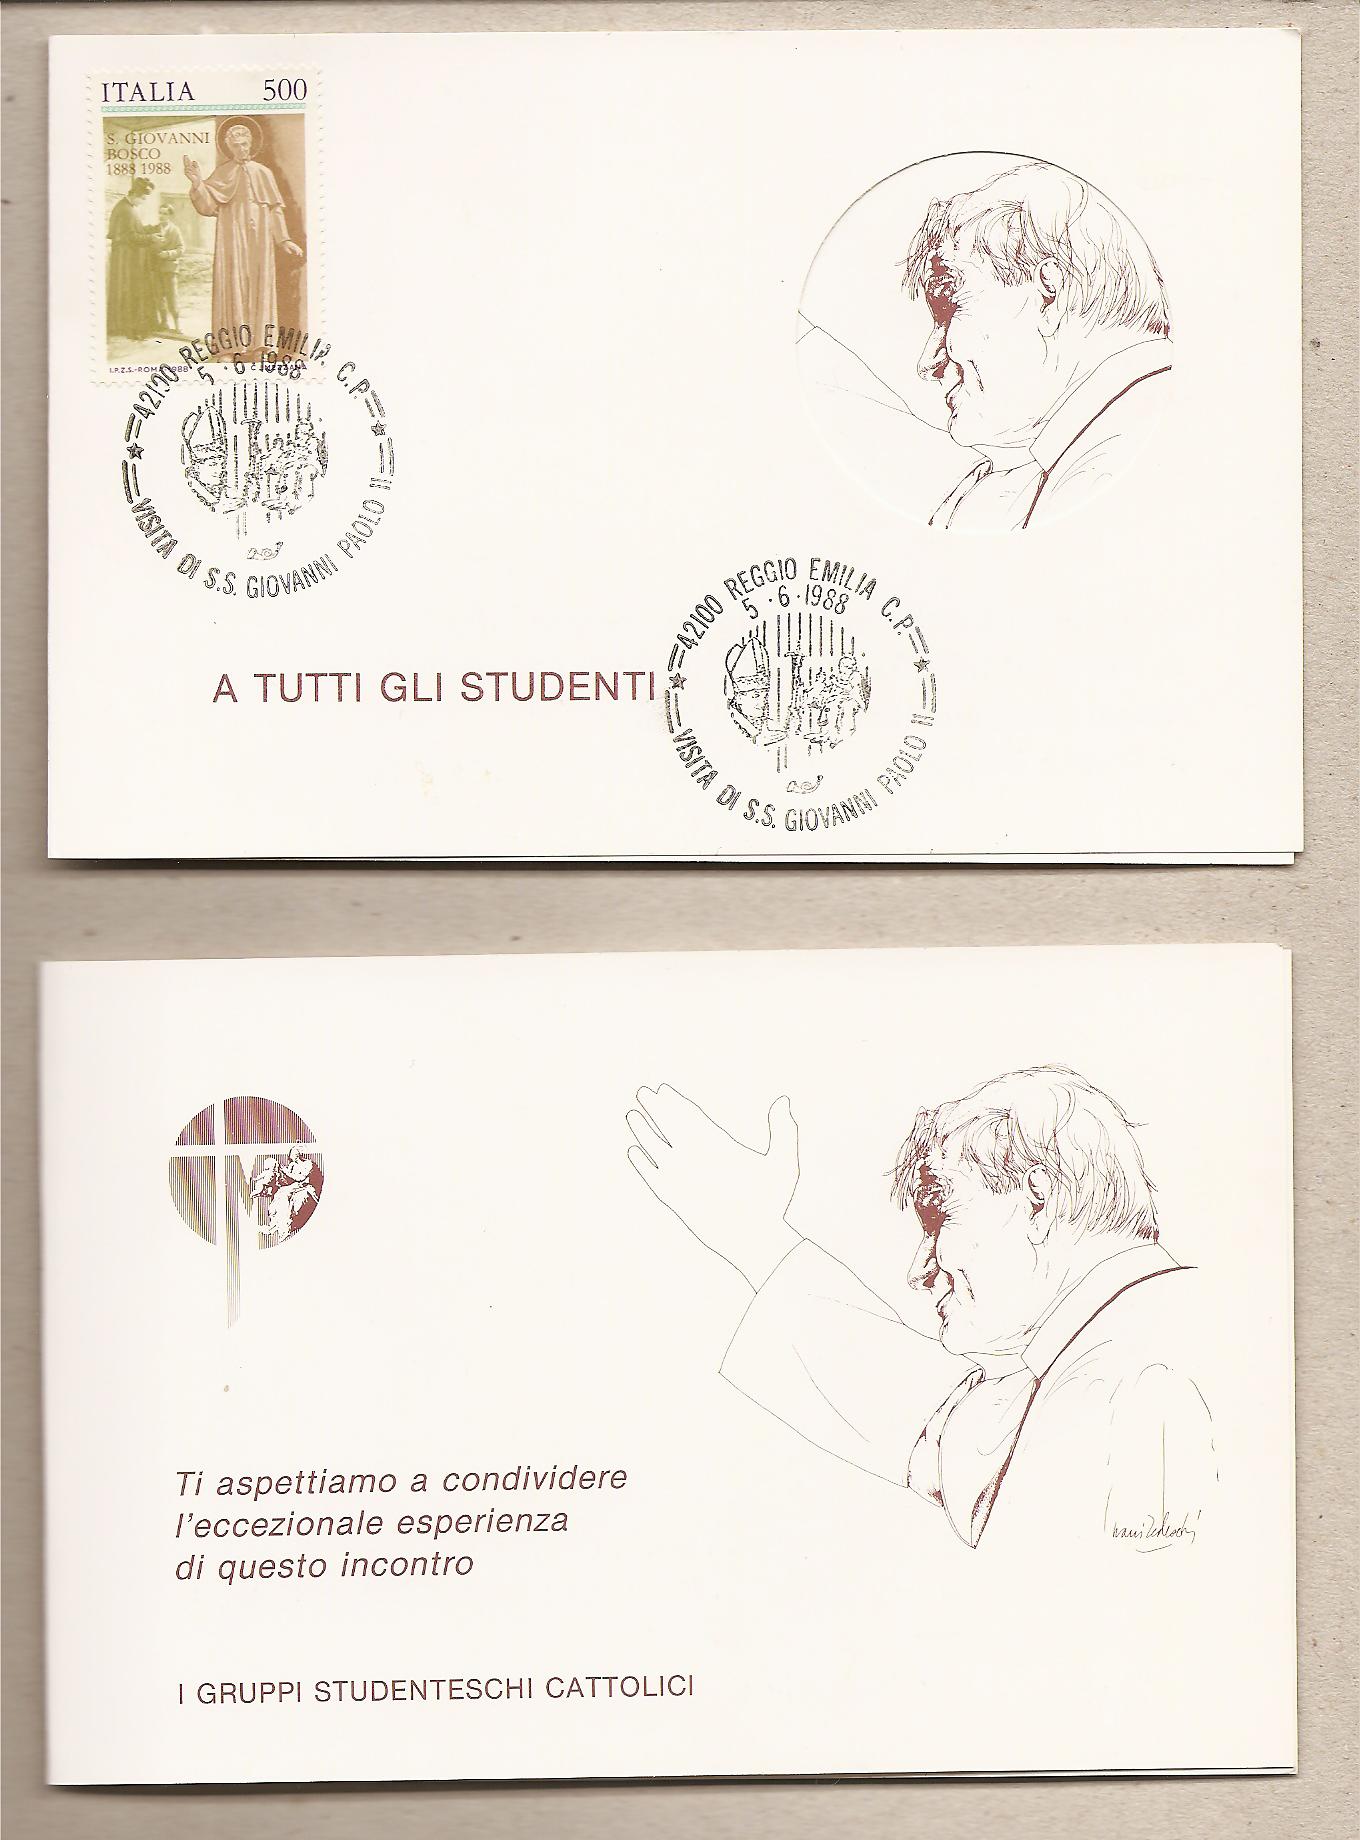 38136 - Italia - invito agli studenti per incontrare S.S. Giovanni Paolo II in visita a Reggio Emilia - 1988 - Annullo speciale